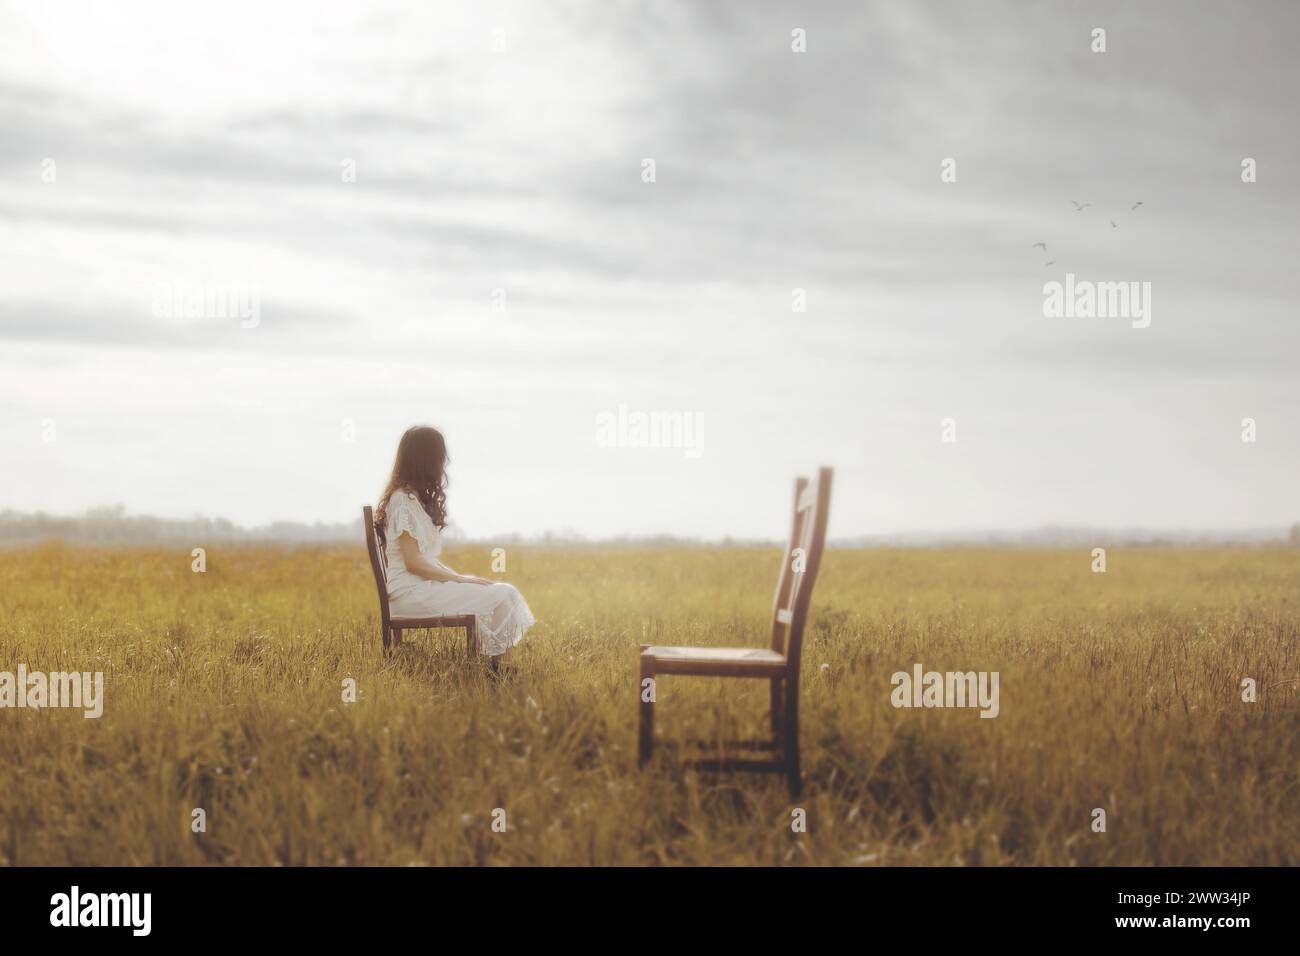 la triste donna seduta si allontana dalla sedia vuota dell'amante, concetto futuro Foto Stock